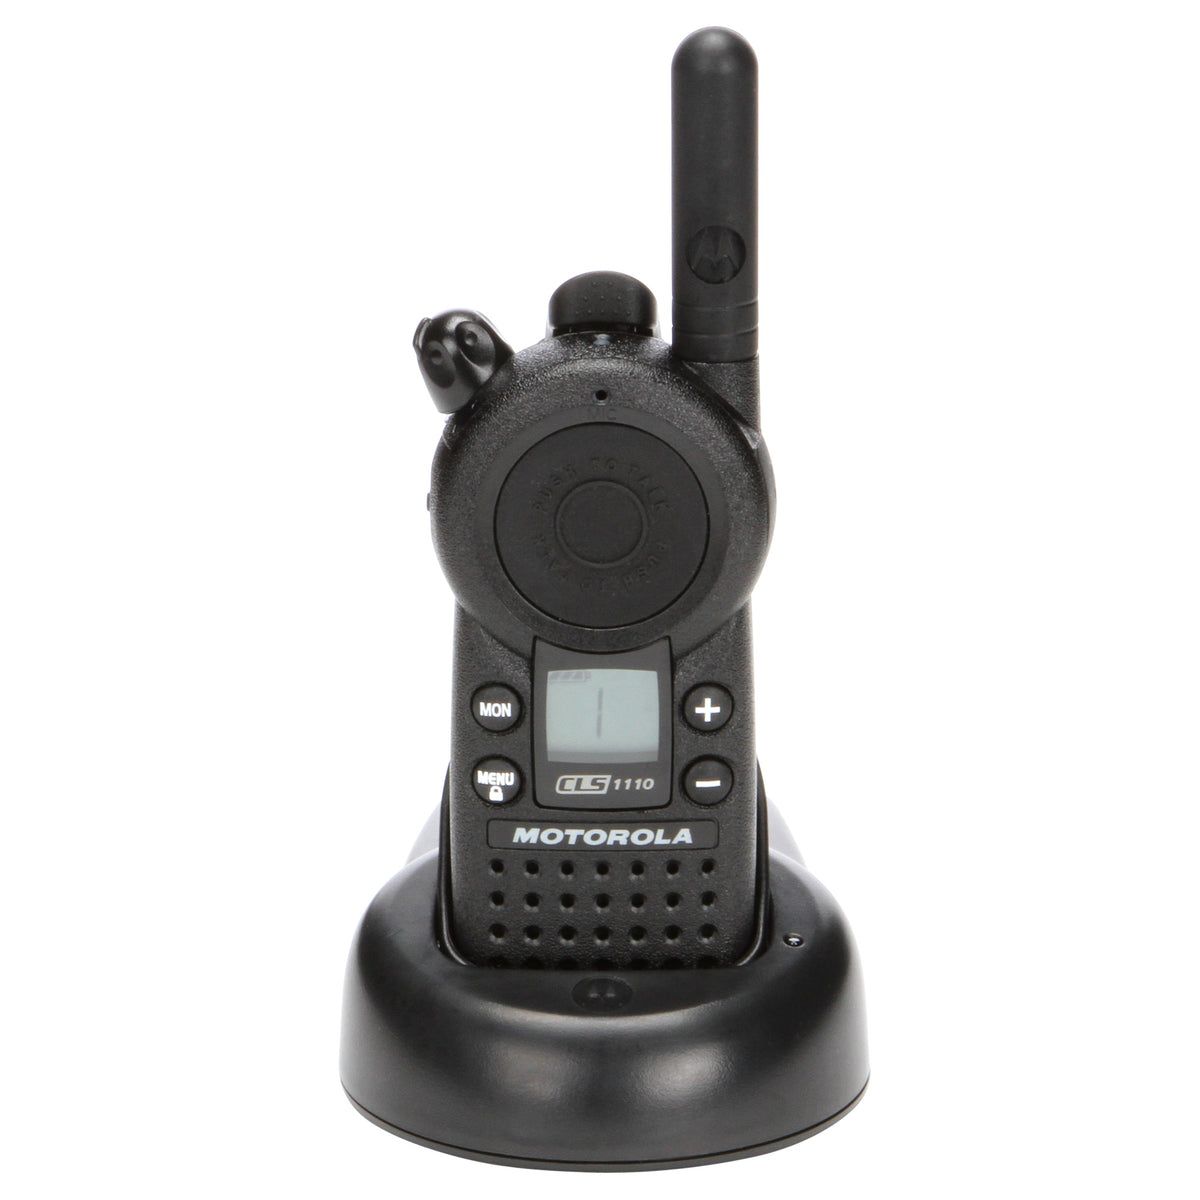 Motorola CLS1110 UHF W Ch Radios w/ Multicharger| TwoWayRadioGear